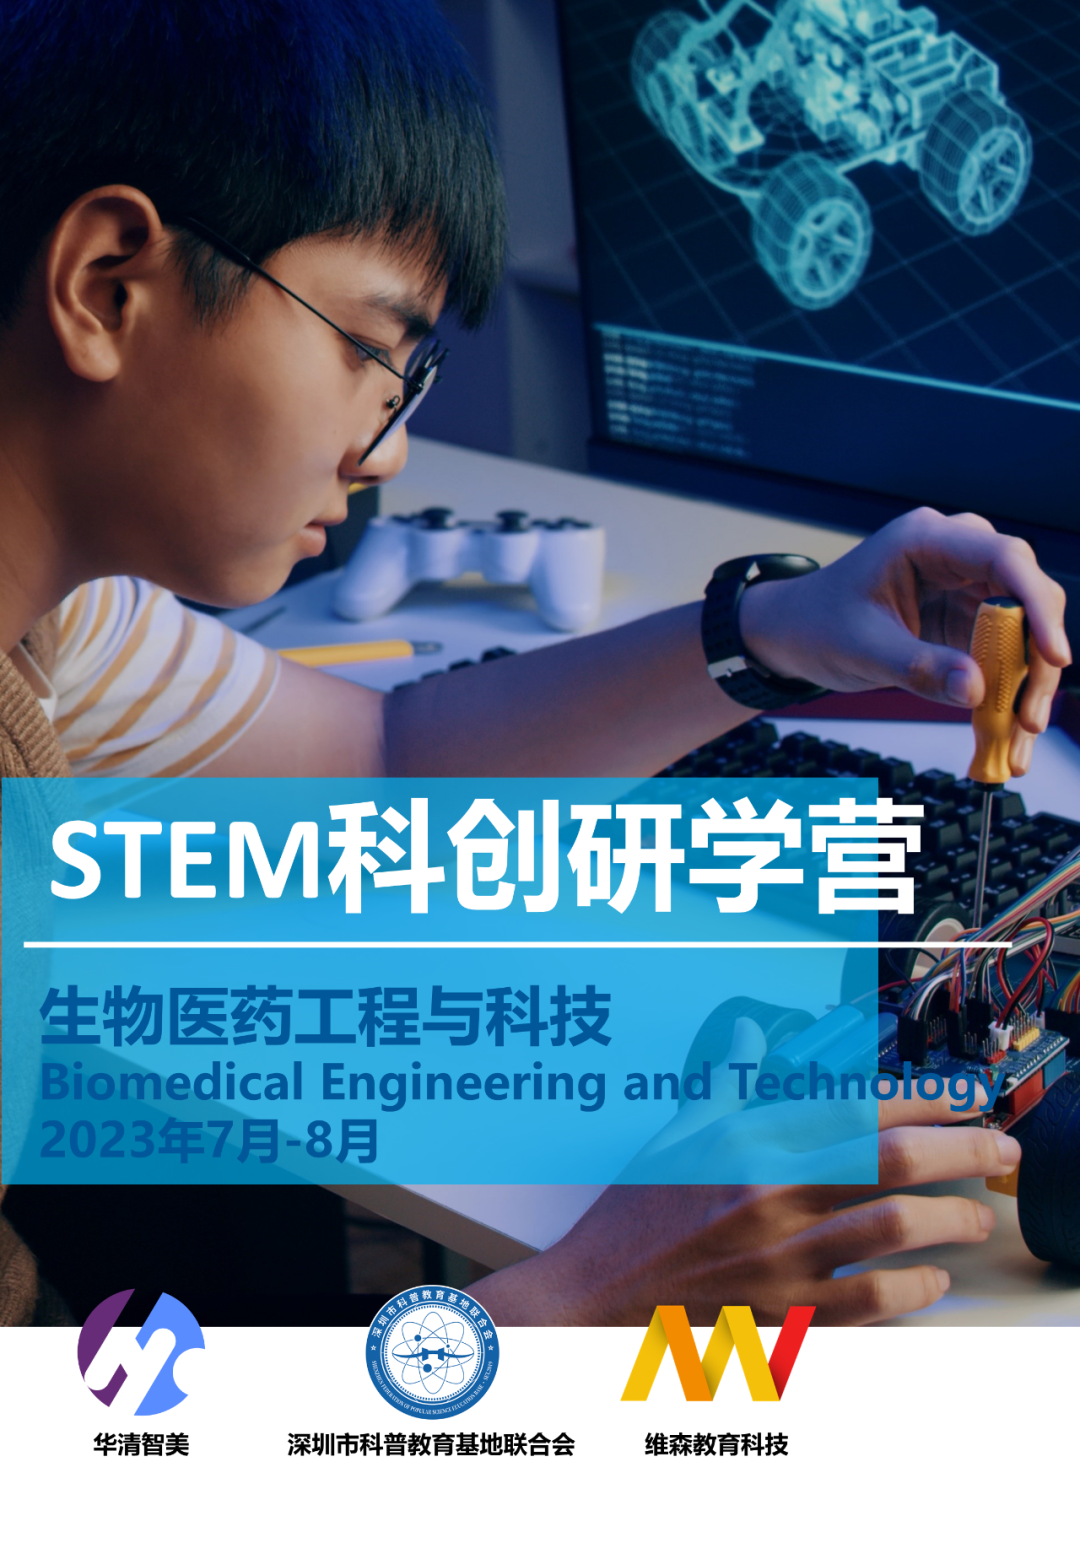 【2023】STEM科创研学营 | 生物医药工程与科技